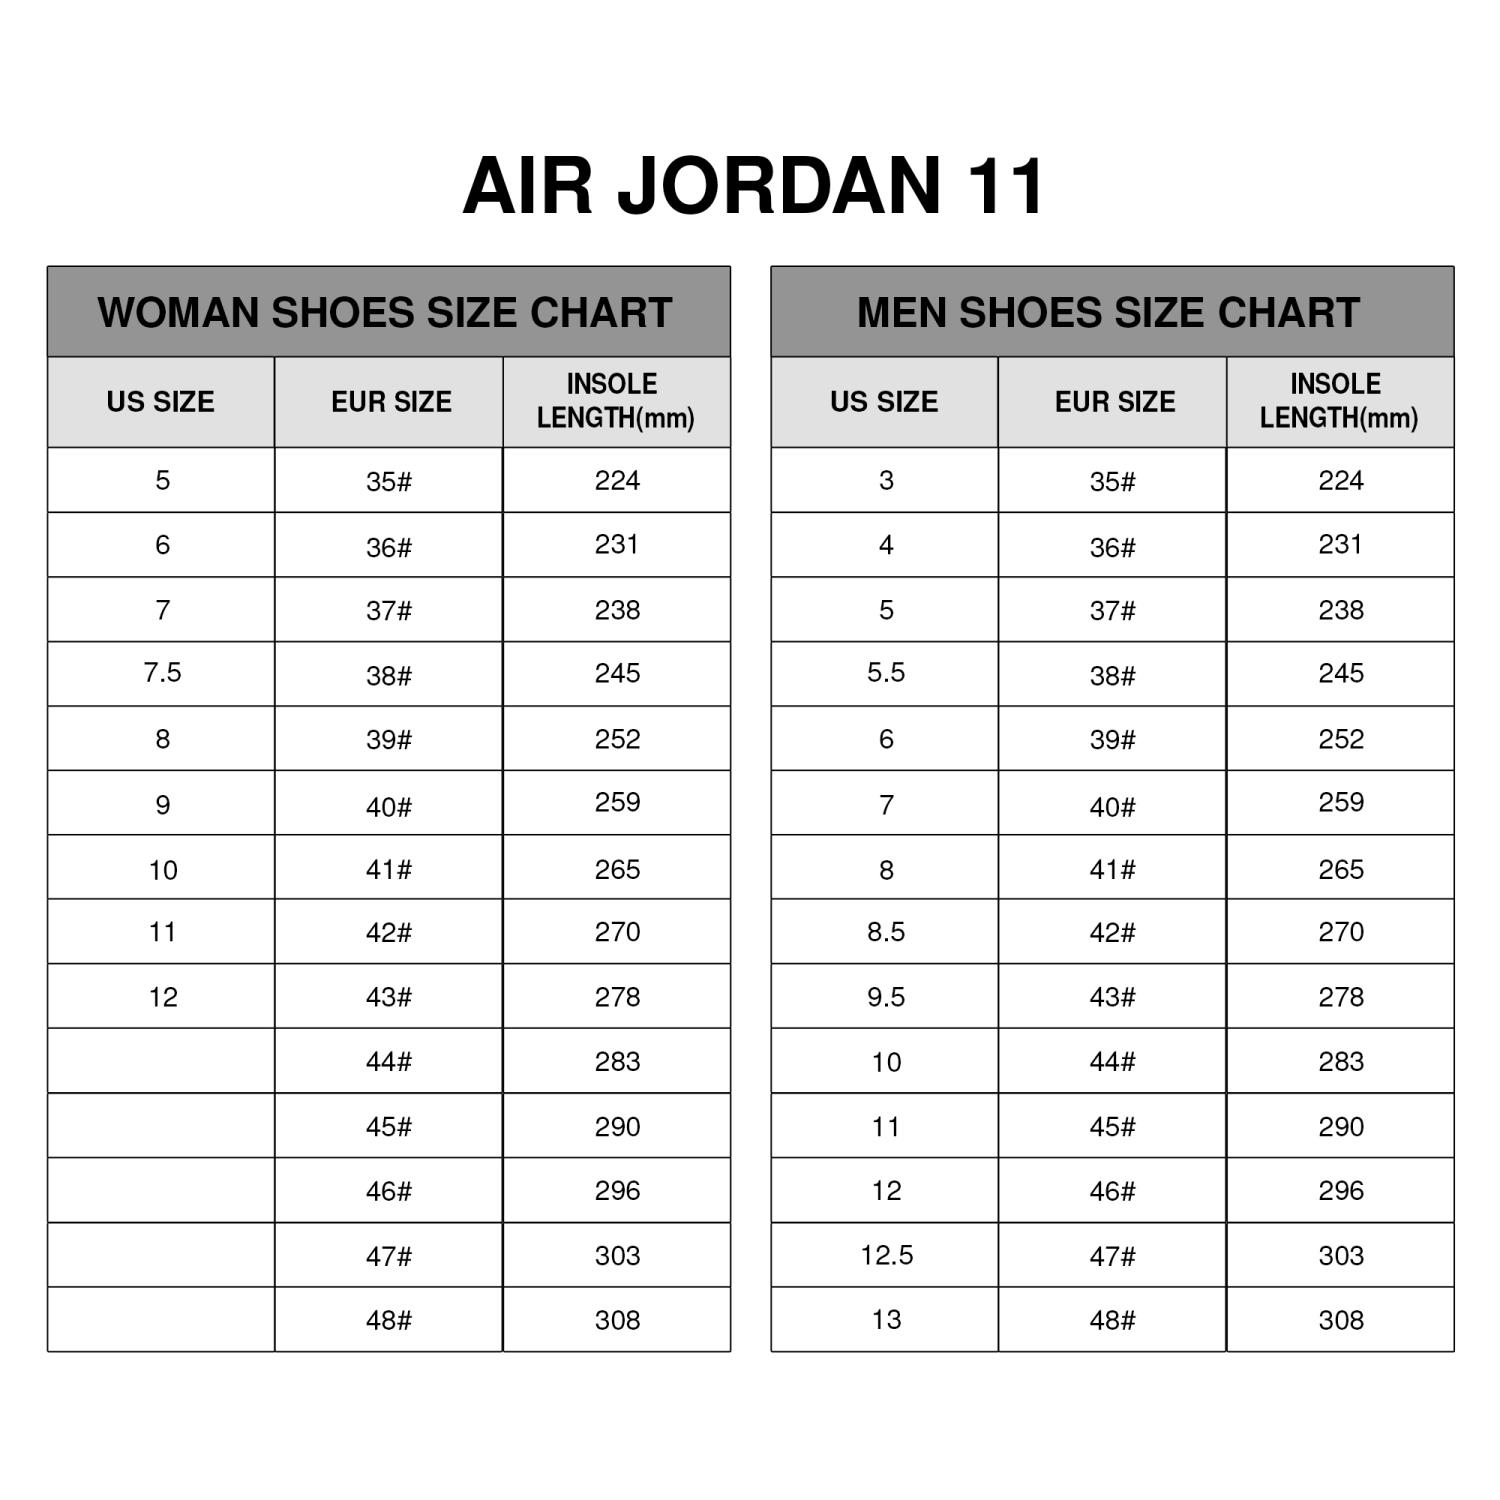 Cincinnati Bengals Air Jordan 11 Sneaker